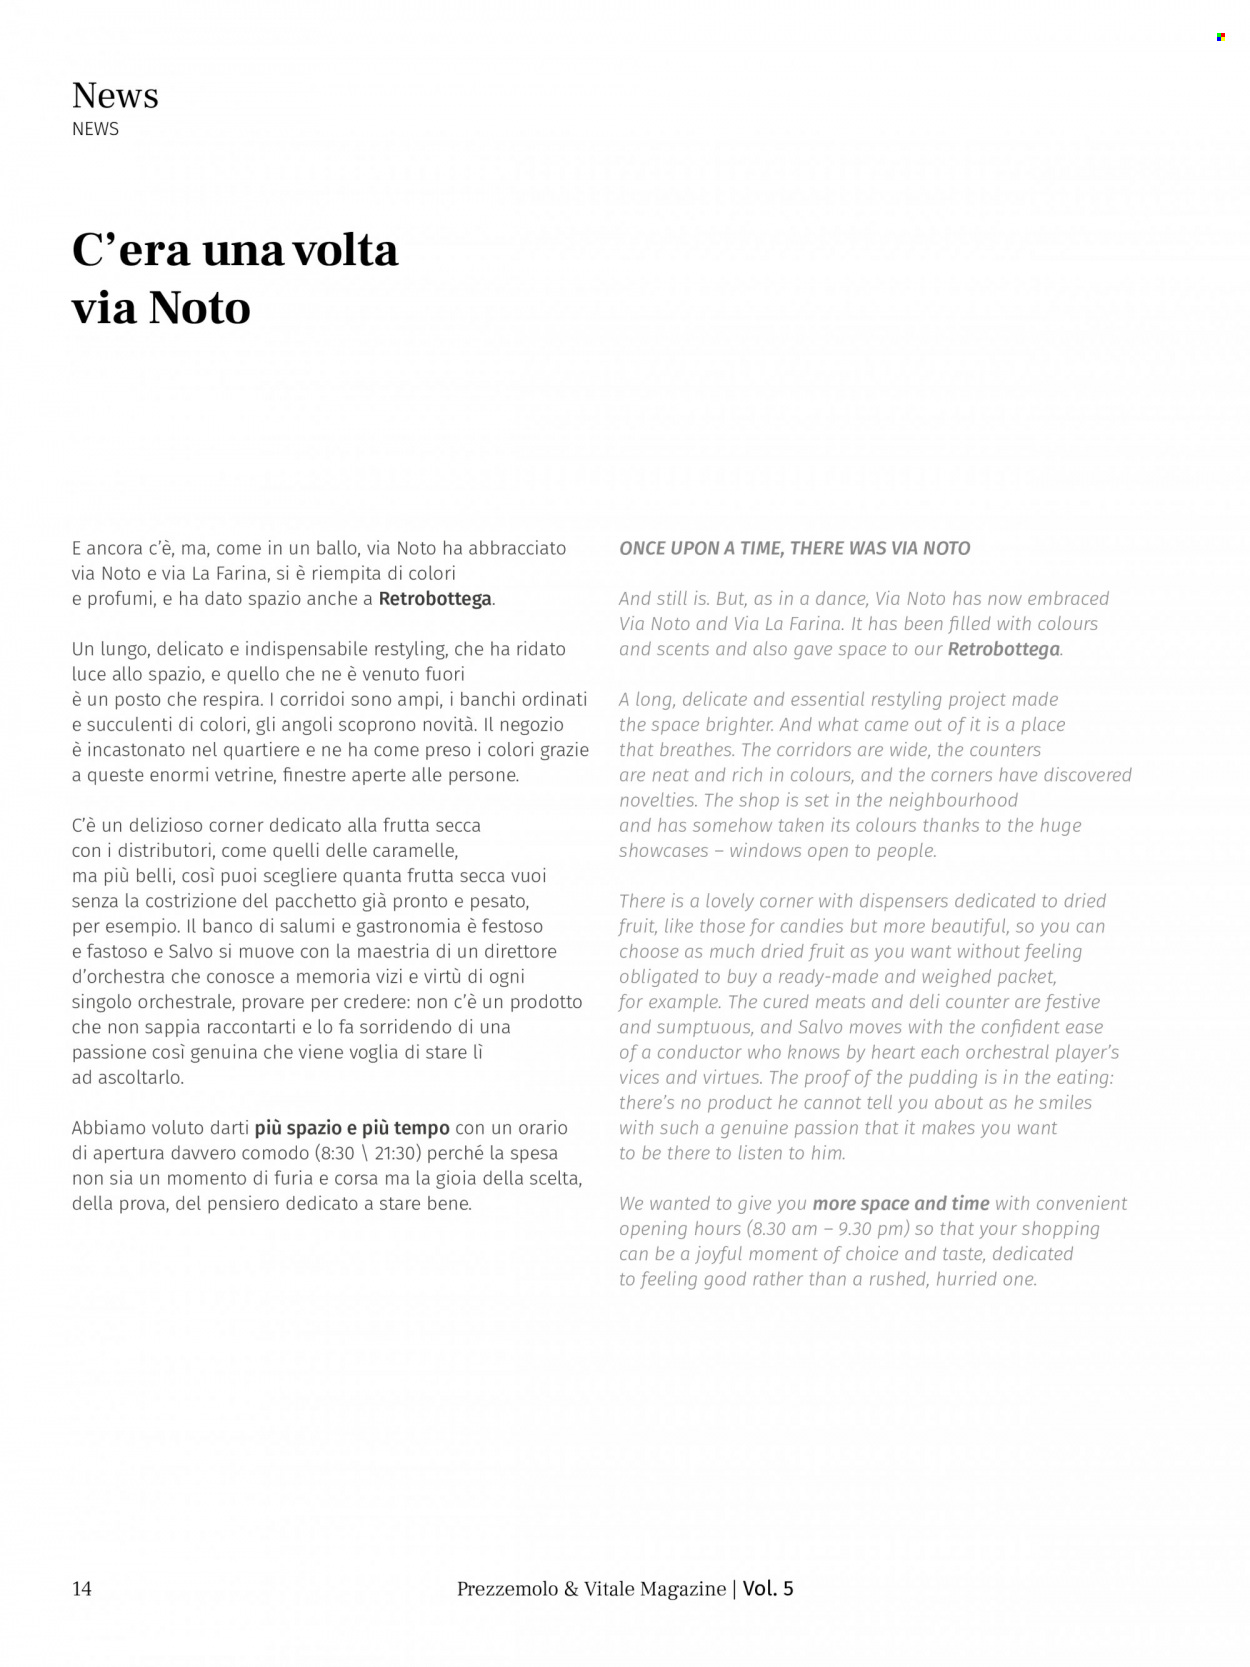 Volantino Prezzemolo & Vitale. Pagina 15.